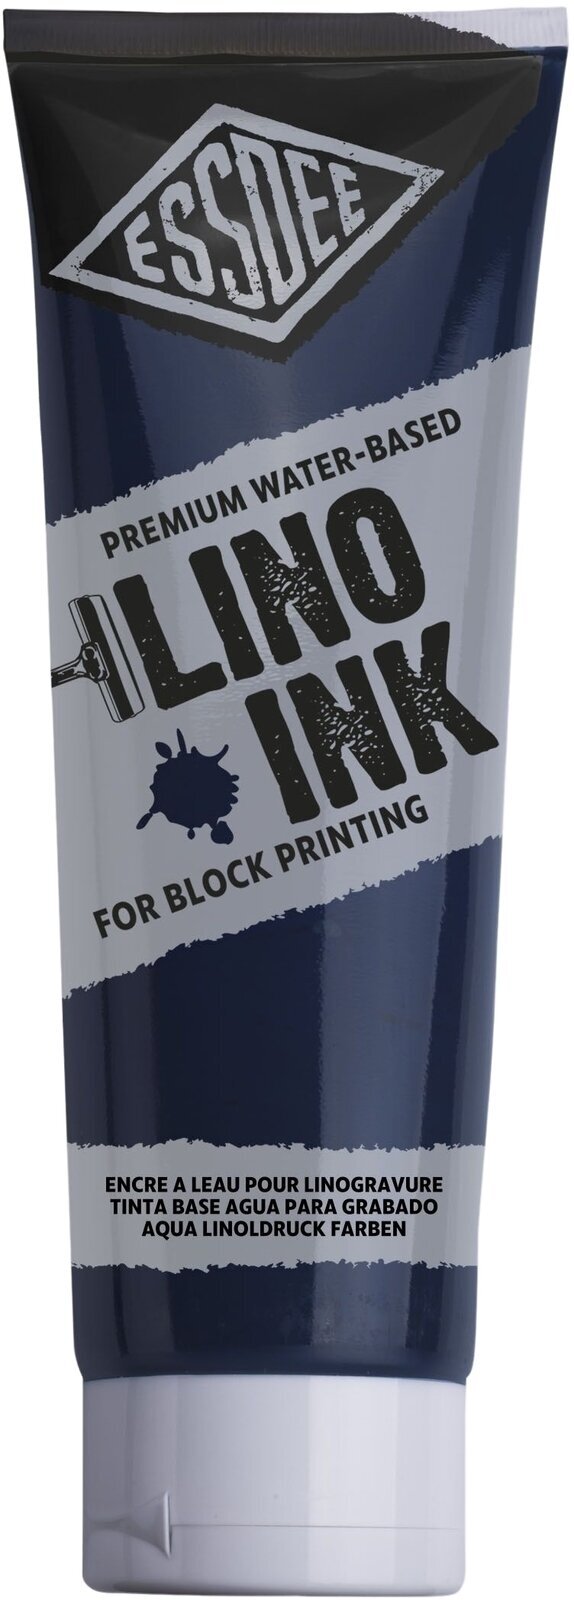 Pintura para linograbado Essdee Block Printing Ink Pintura para linograbado Prussian Blue 300 ml